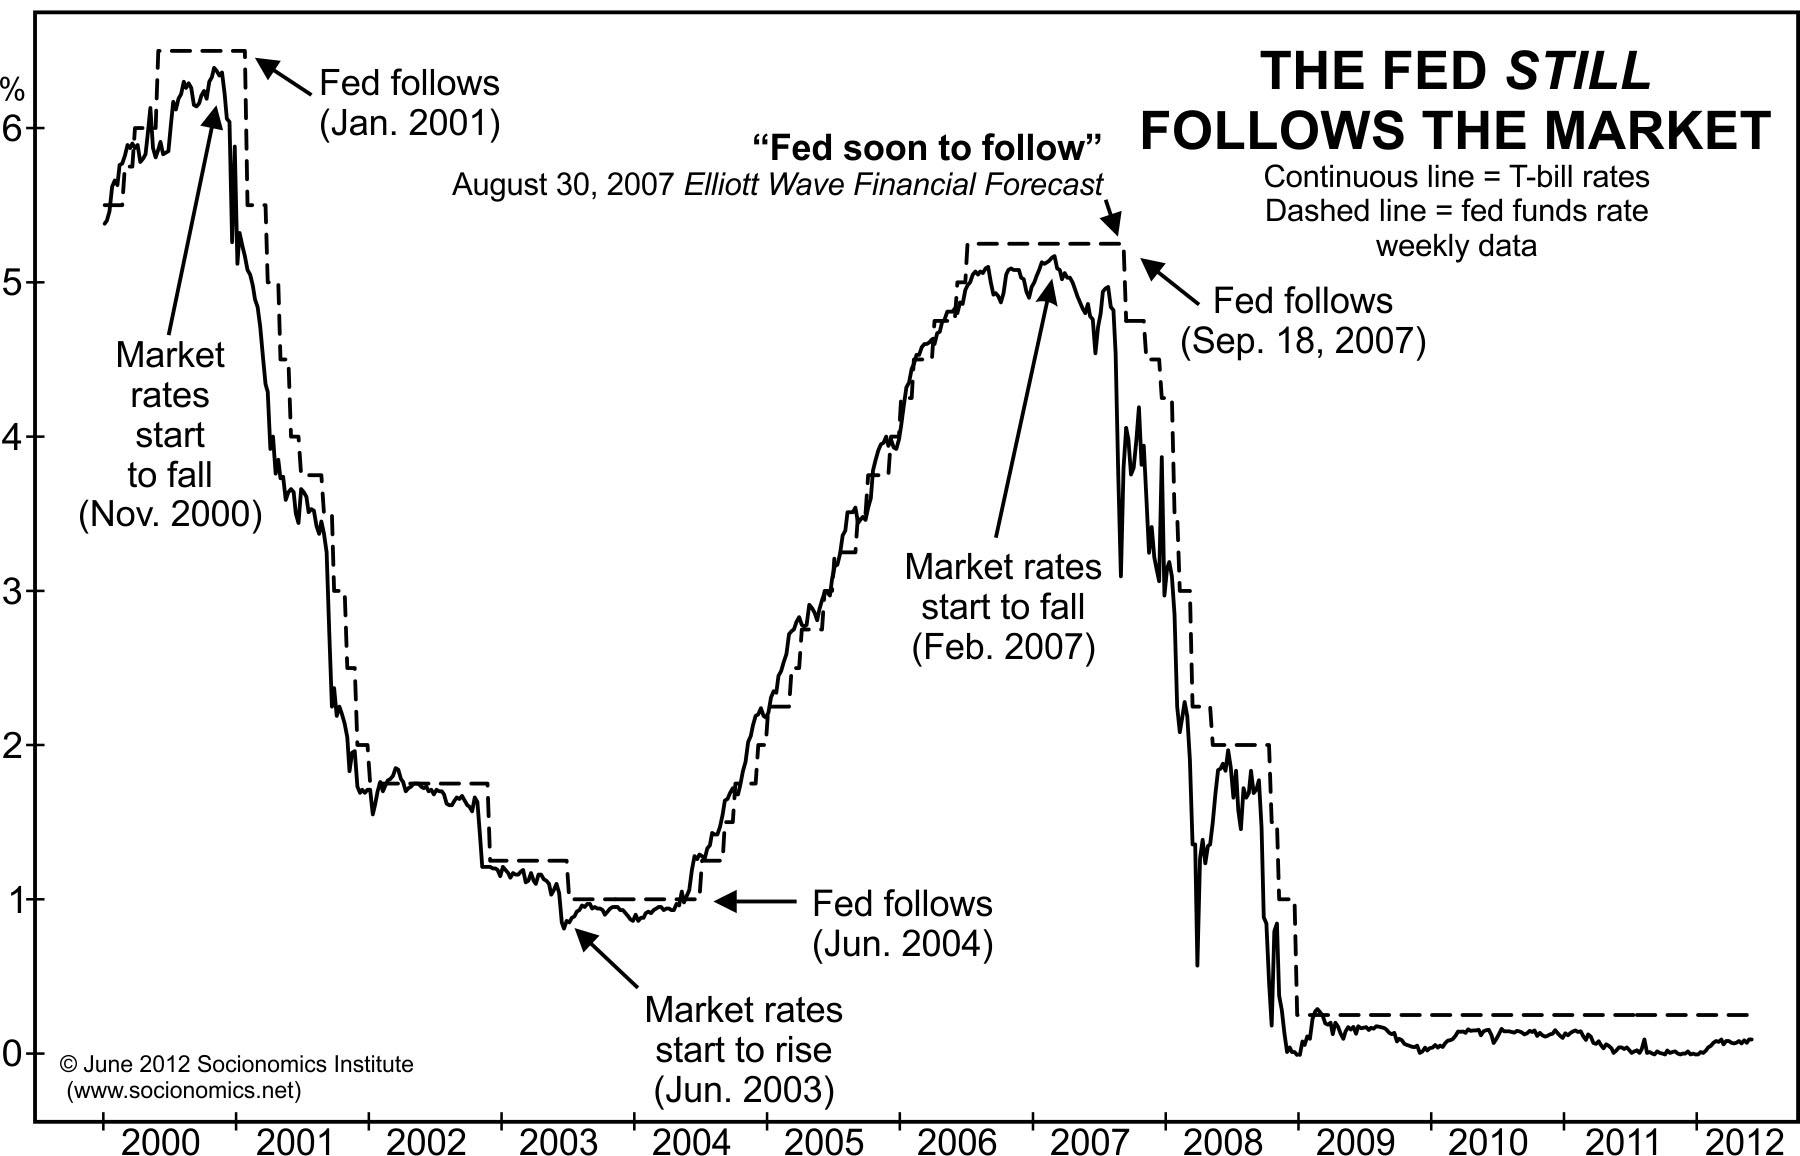 Fed Still Follows The Market